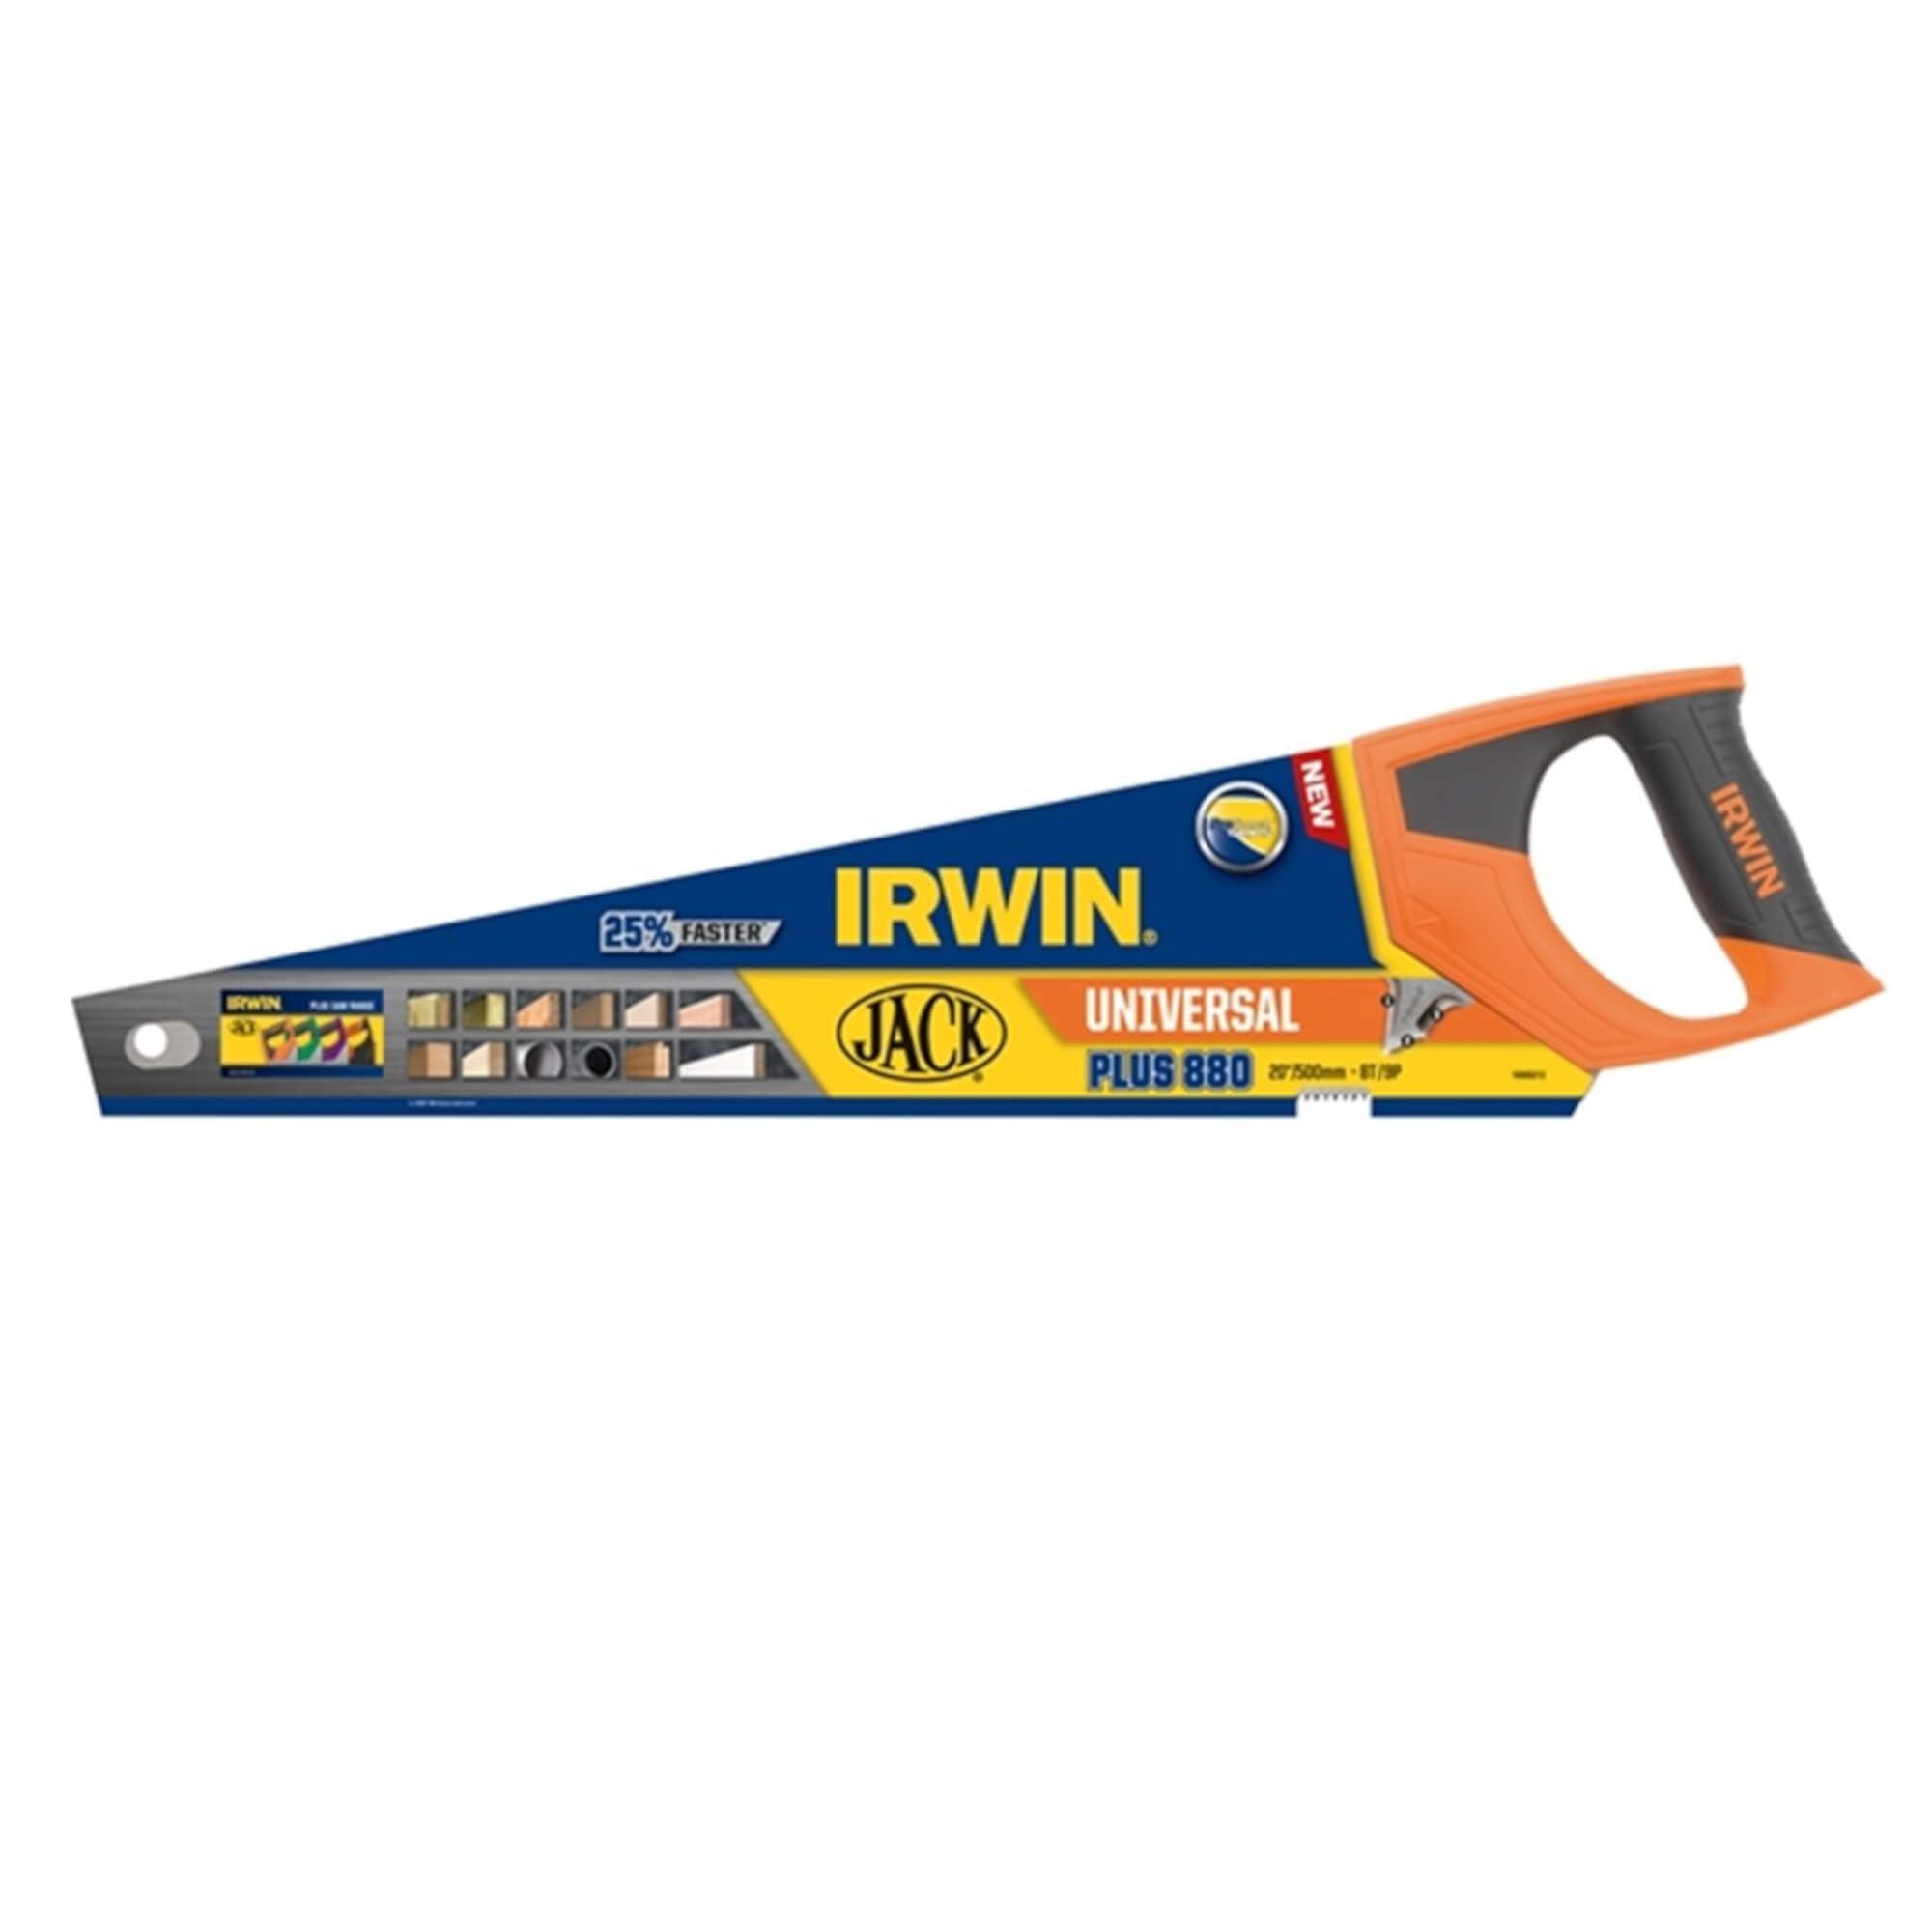 Irwin Jack 20" Universal Saw